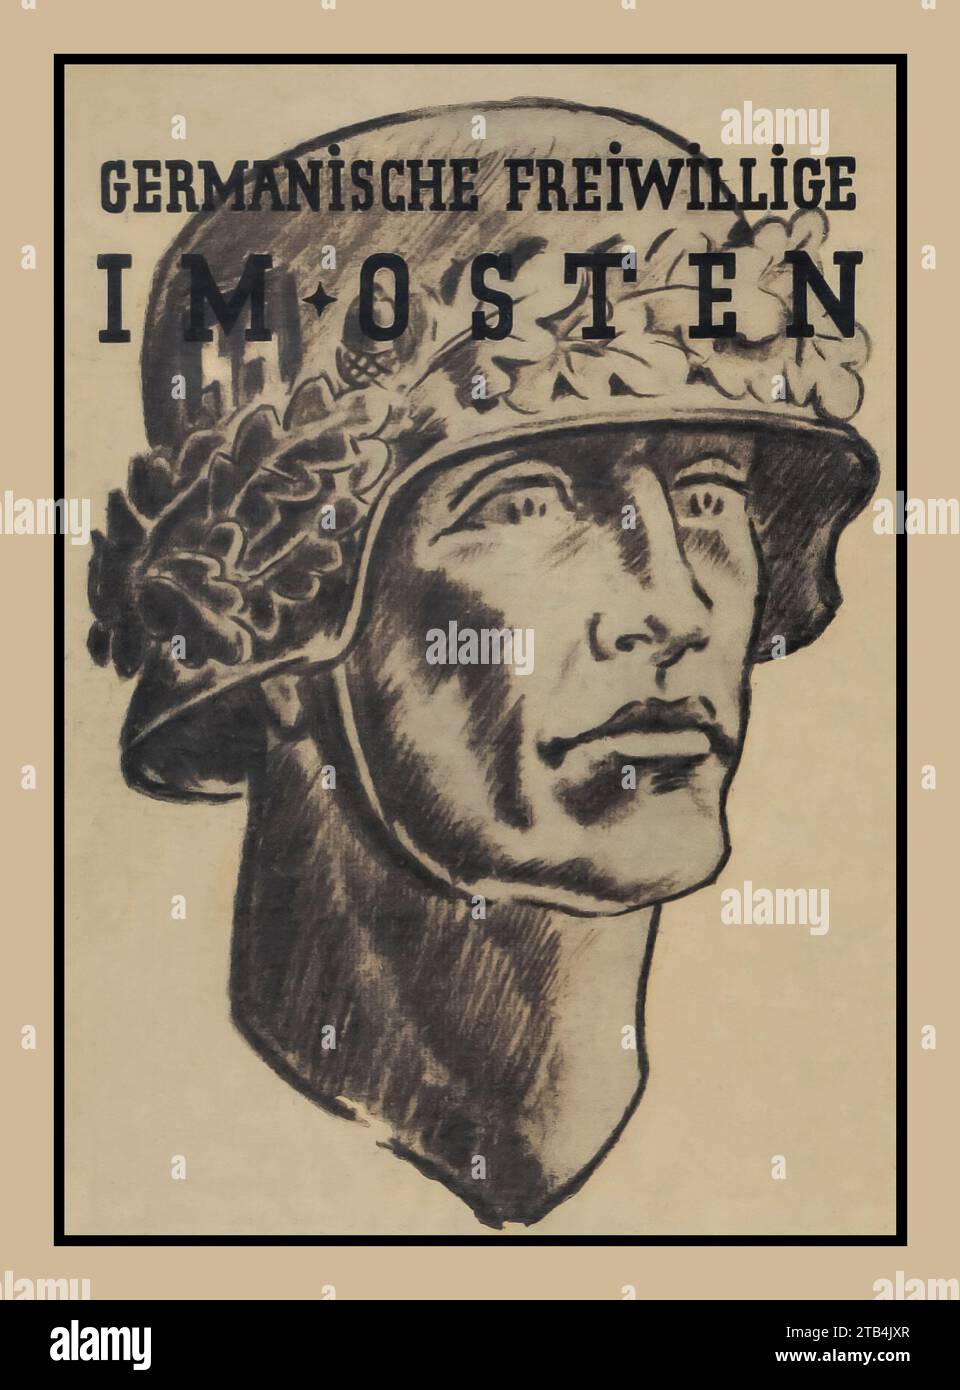 Affiche de recrutement de propagande nazie des années 1940 WW2 illustrant un soldat Waffen SS avec son casque gainé de feuilles de chêne. La légende lit la carte promotionnelle de L'affiche « VOLONTAIRES GERMANIQUES DANS L'EST » (germanische freiwillige im OSTEN) Banque D'Images